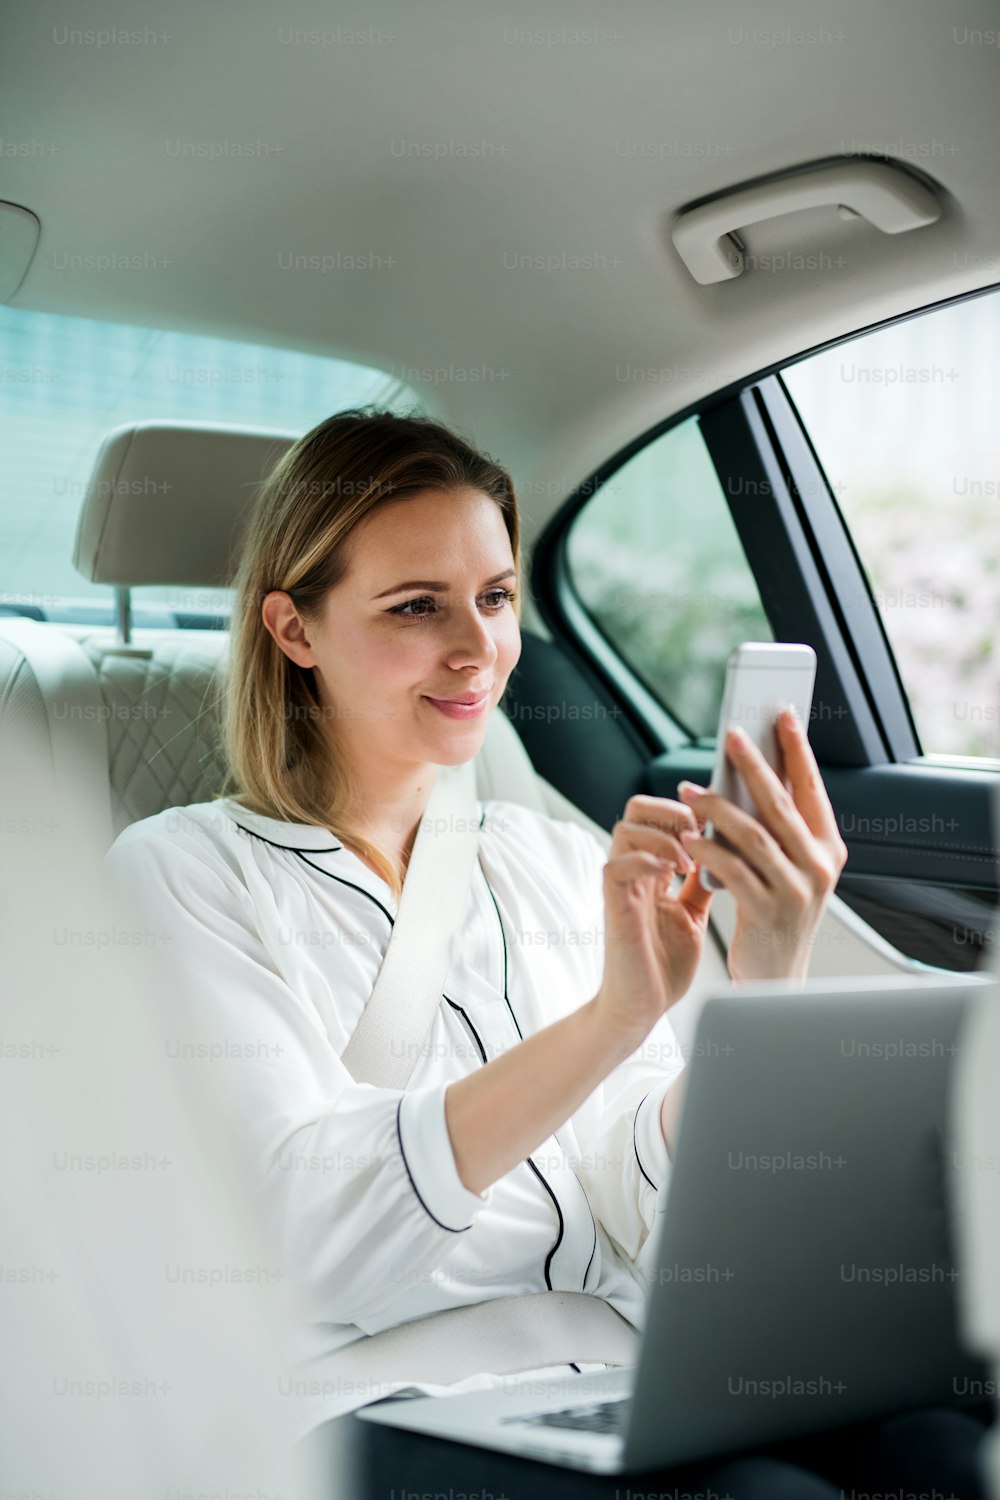 Una mujer de negocios con una computadora portátil sentada en el asiento trasero en un taxi, tomándose una selfie.